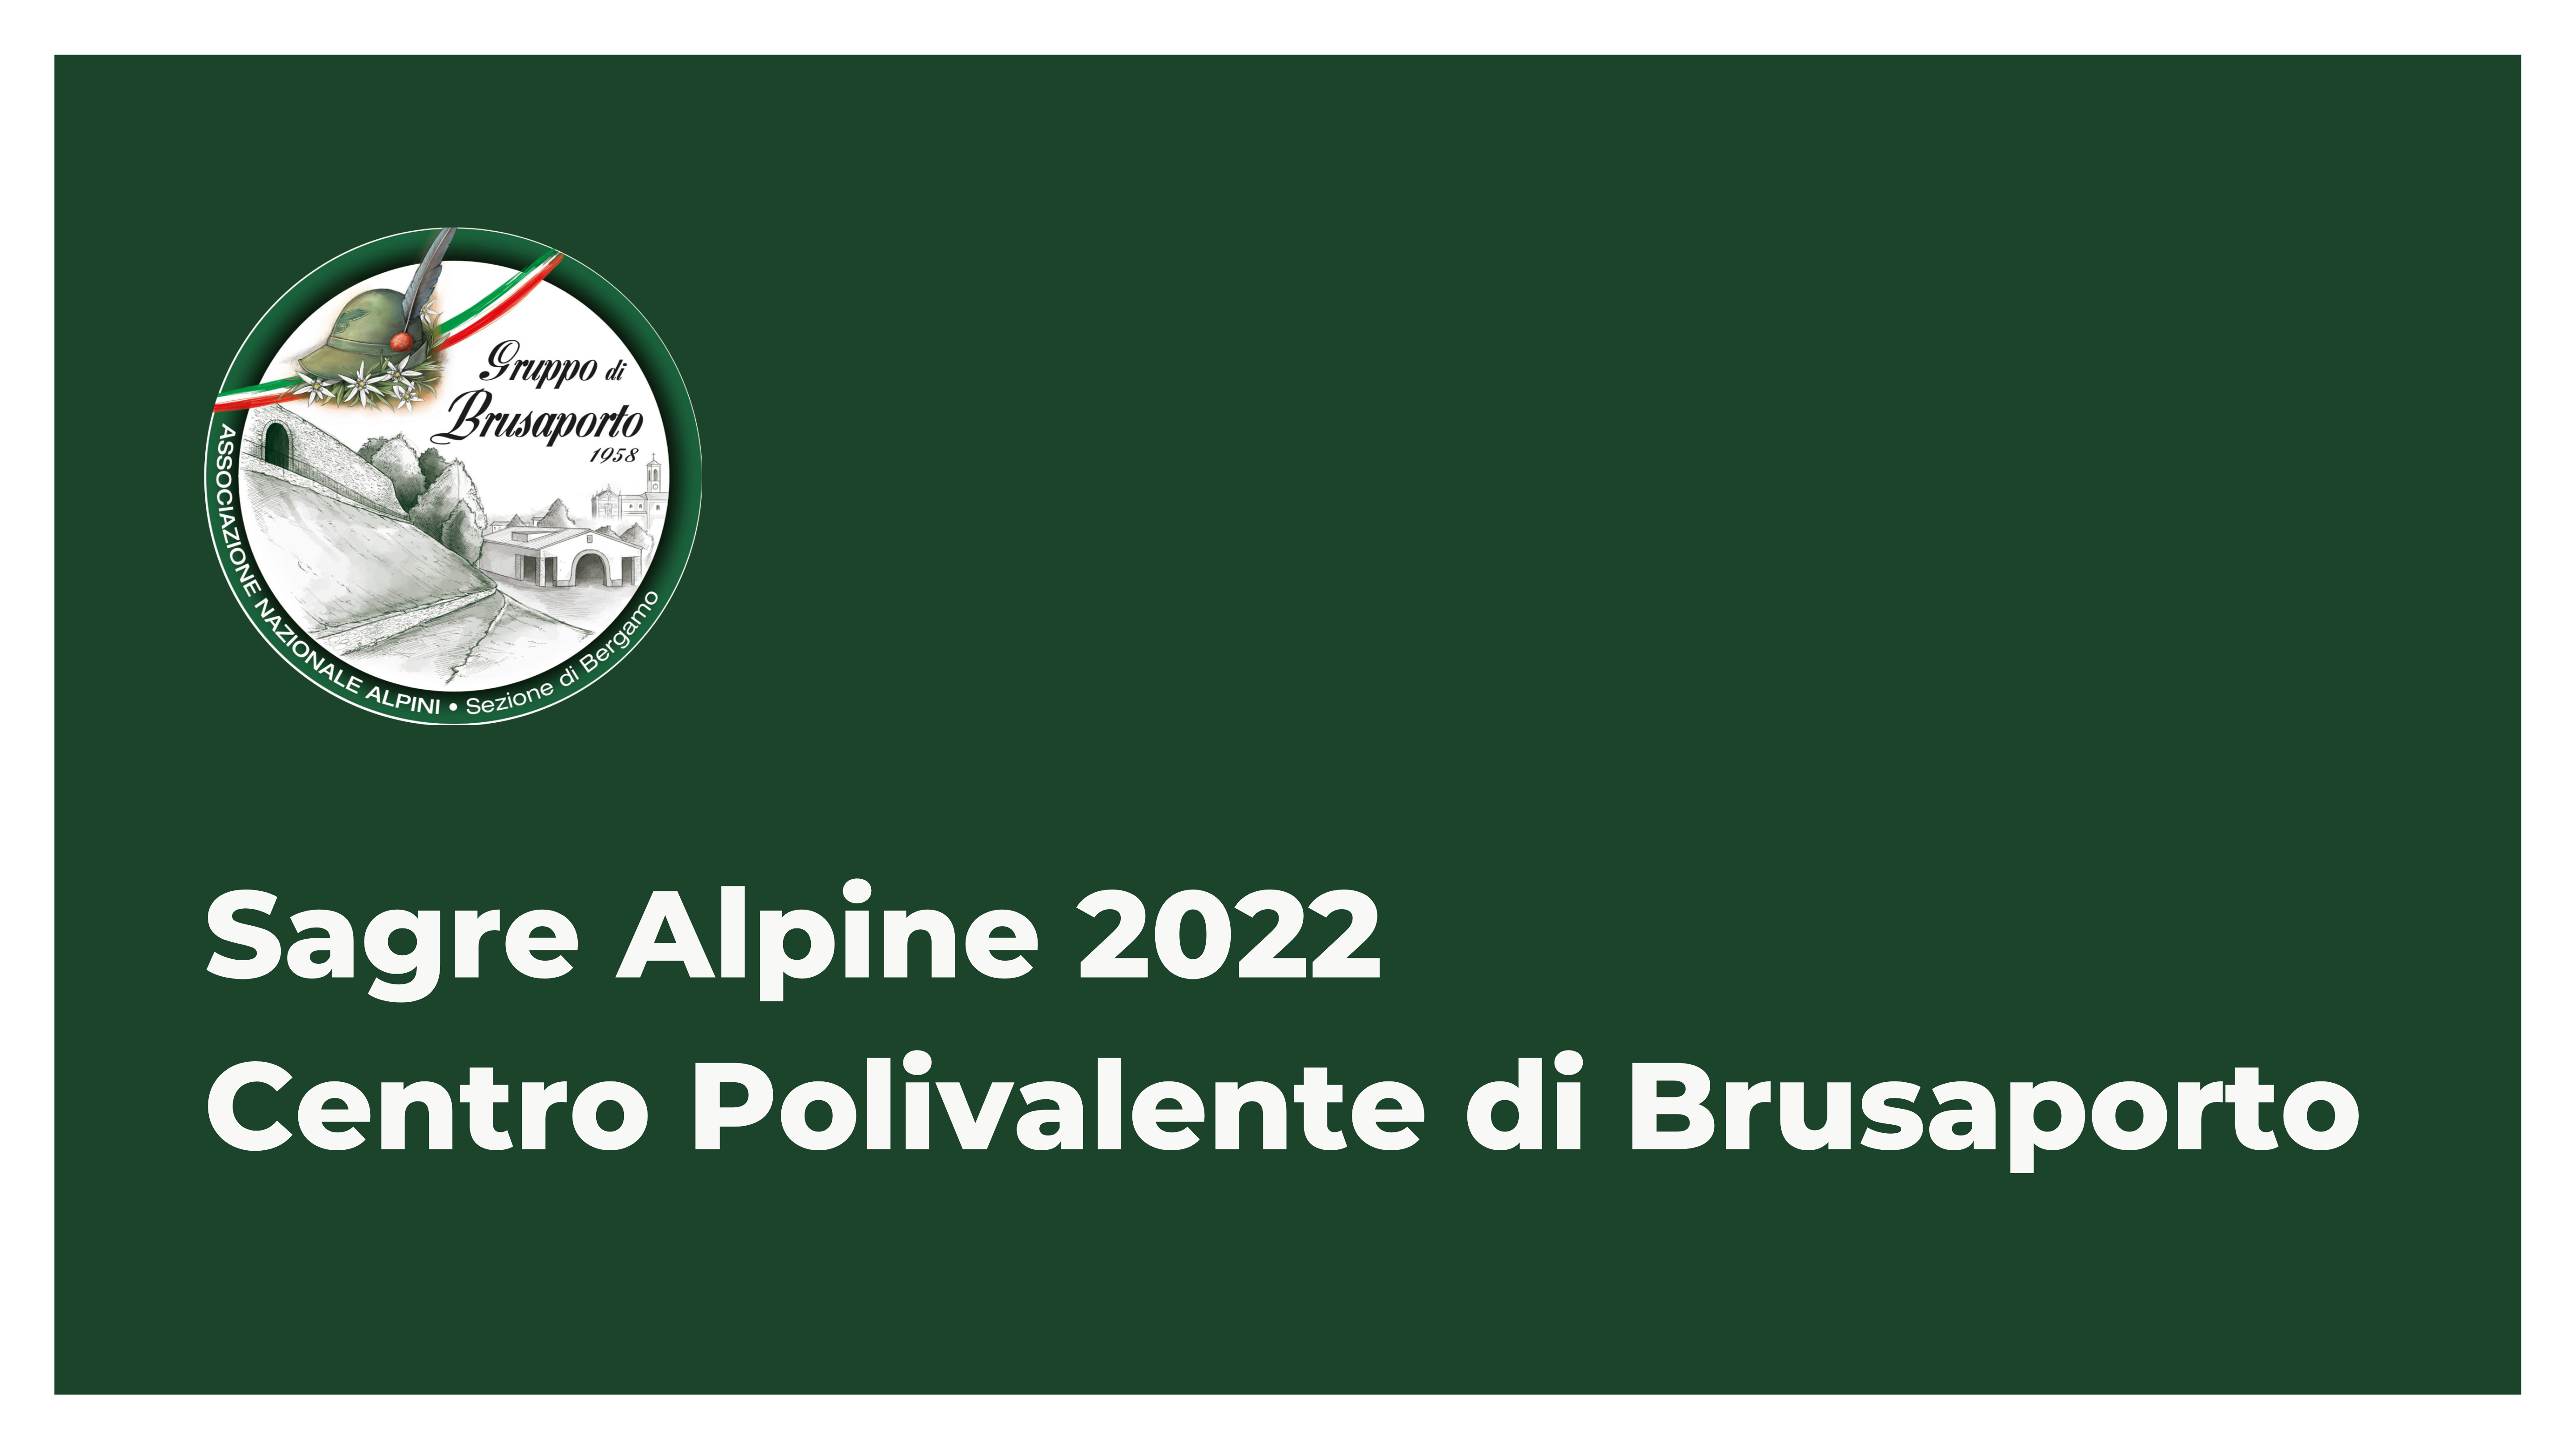 Immagine che raffigura Sagre Alpine 2022